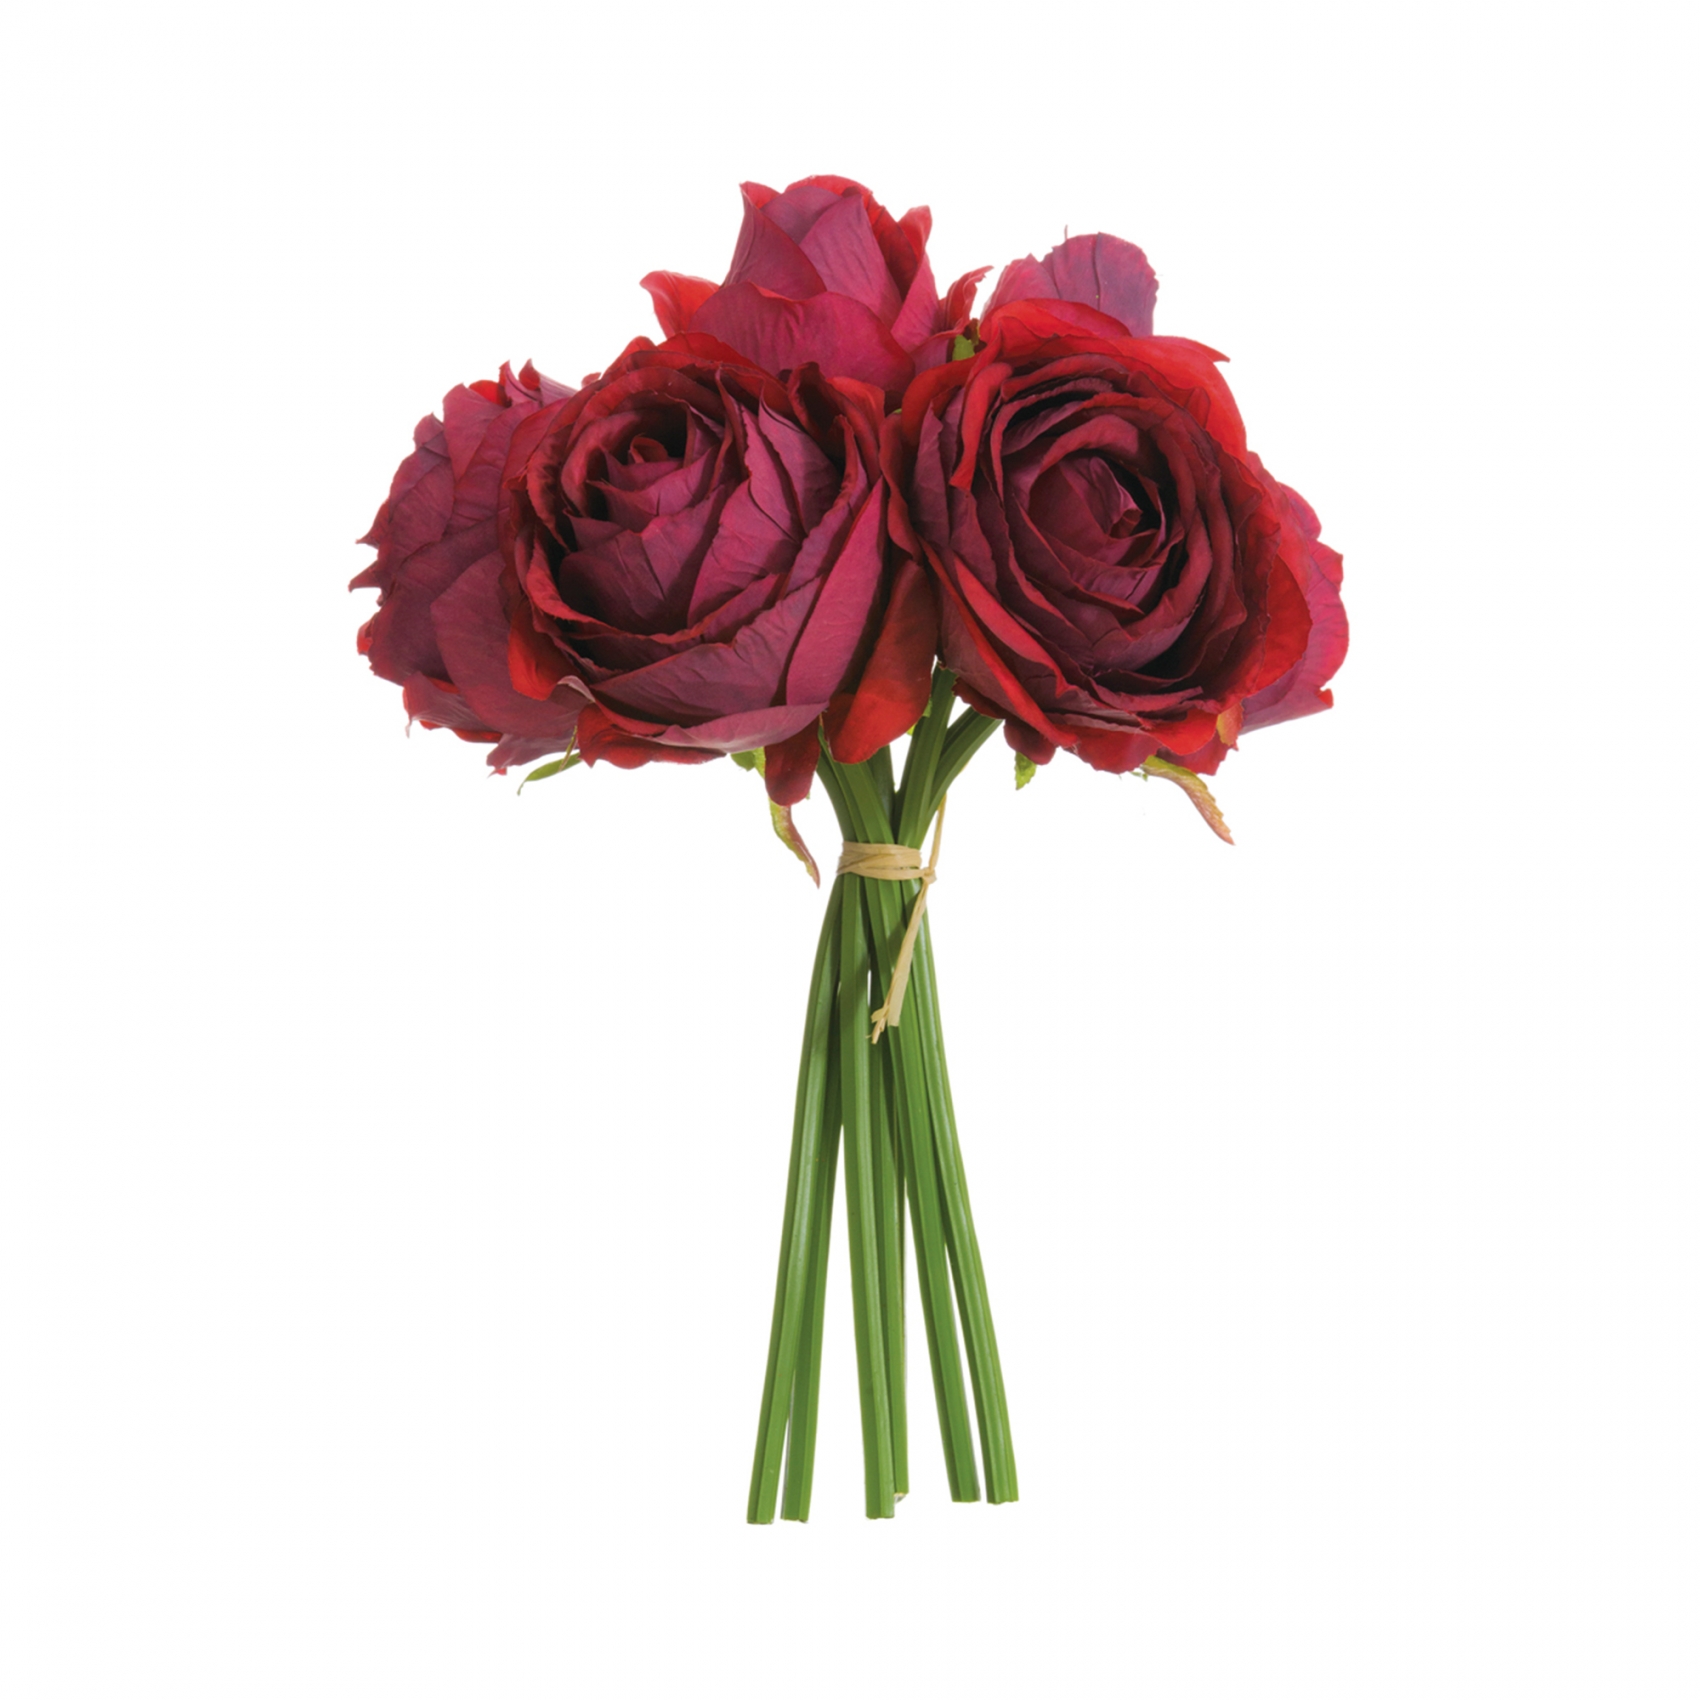 Цветы розы искусственные купить купить мыло ручной работы в москве недорого